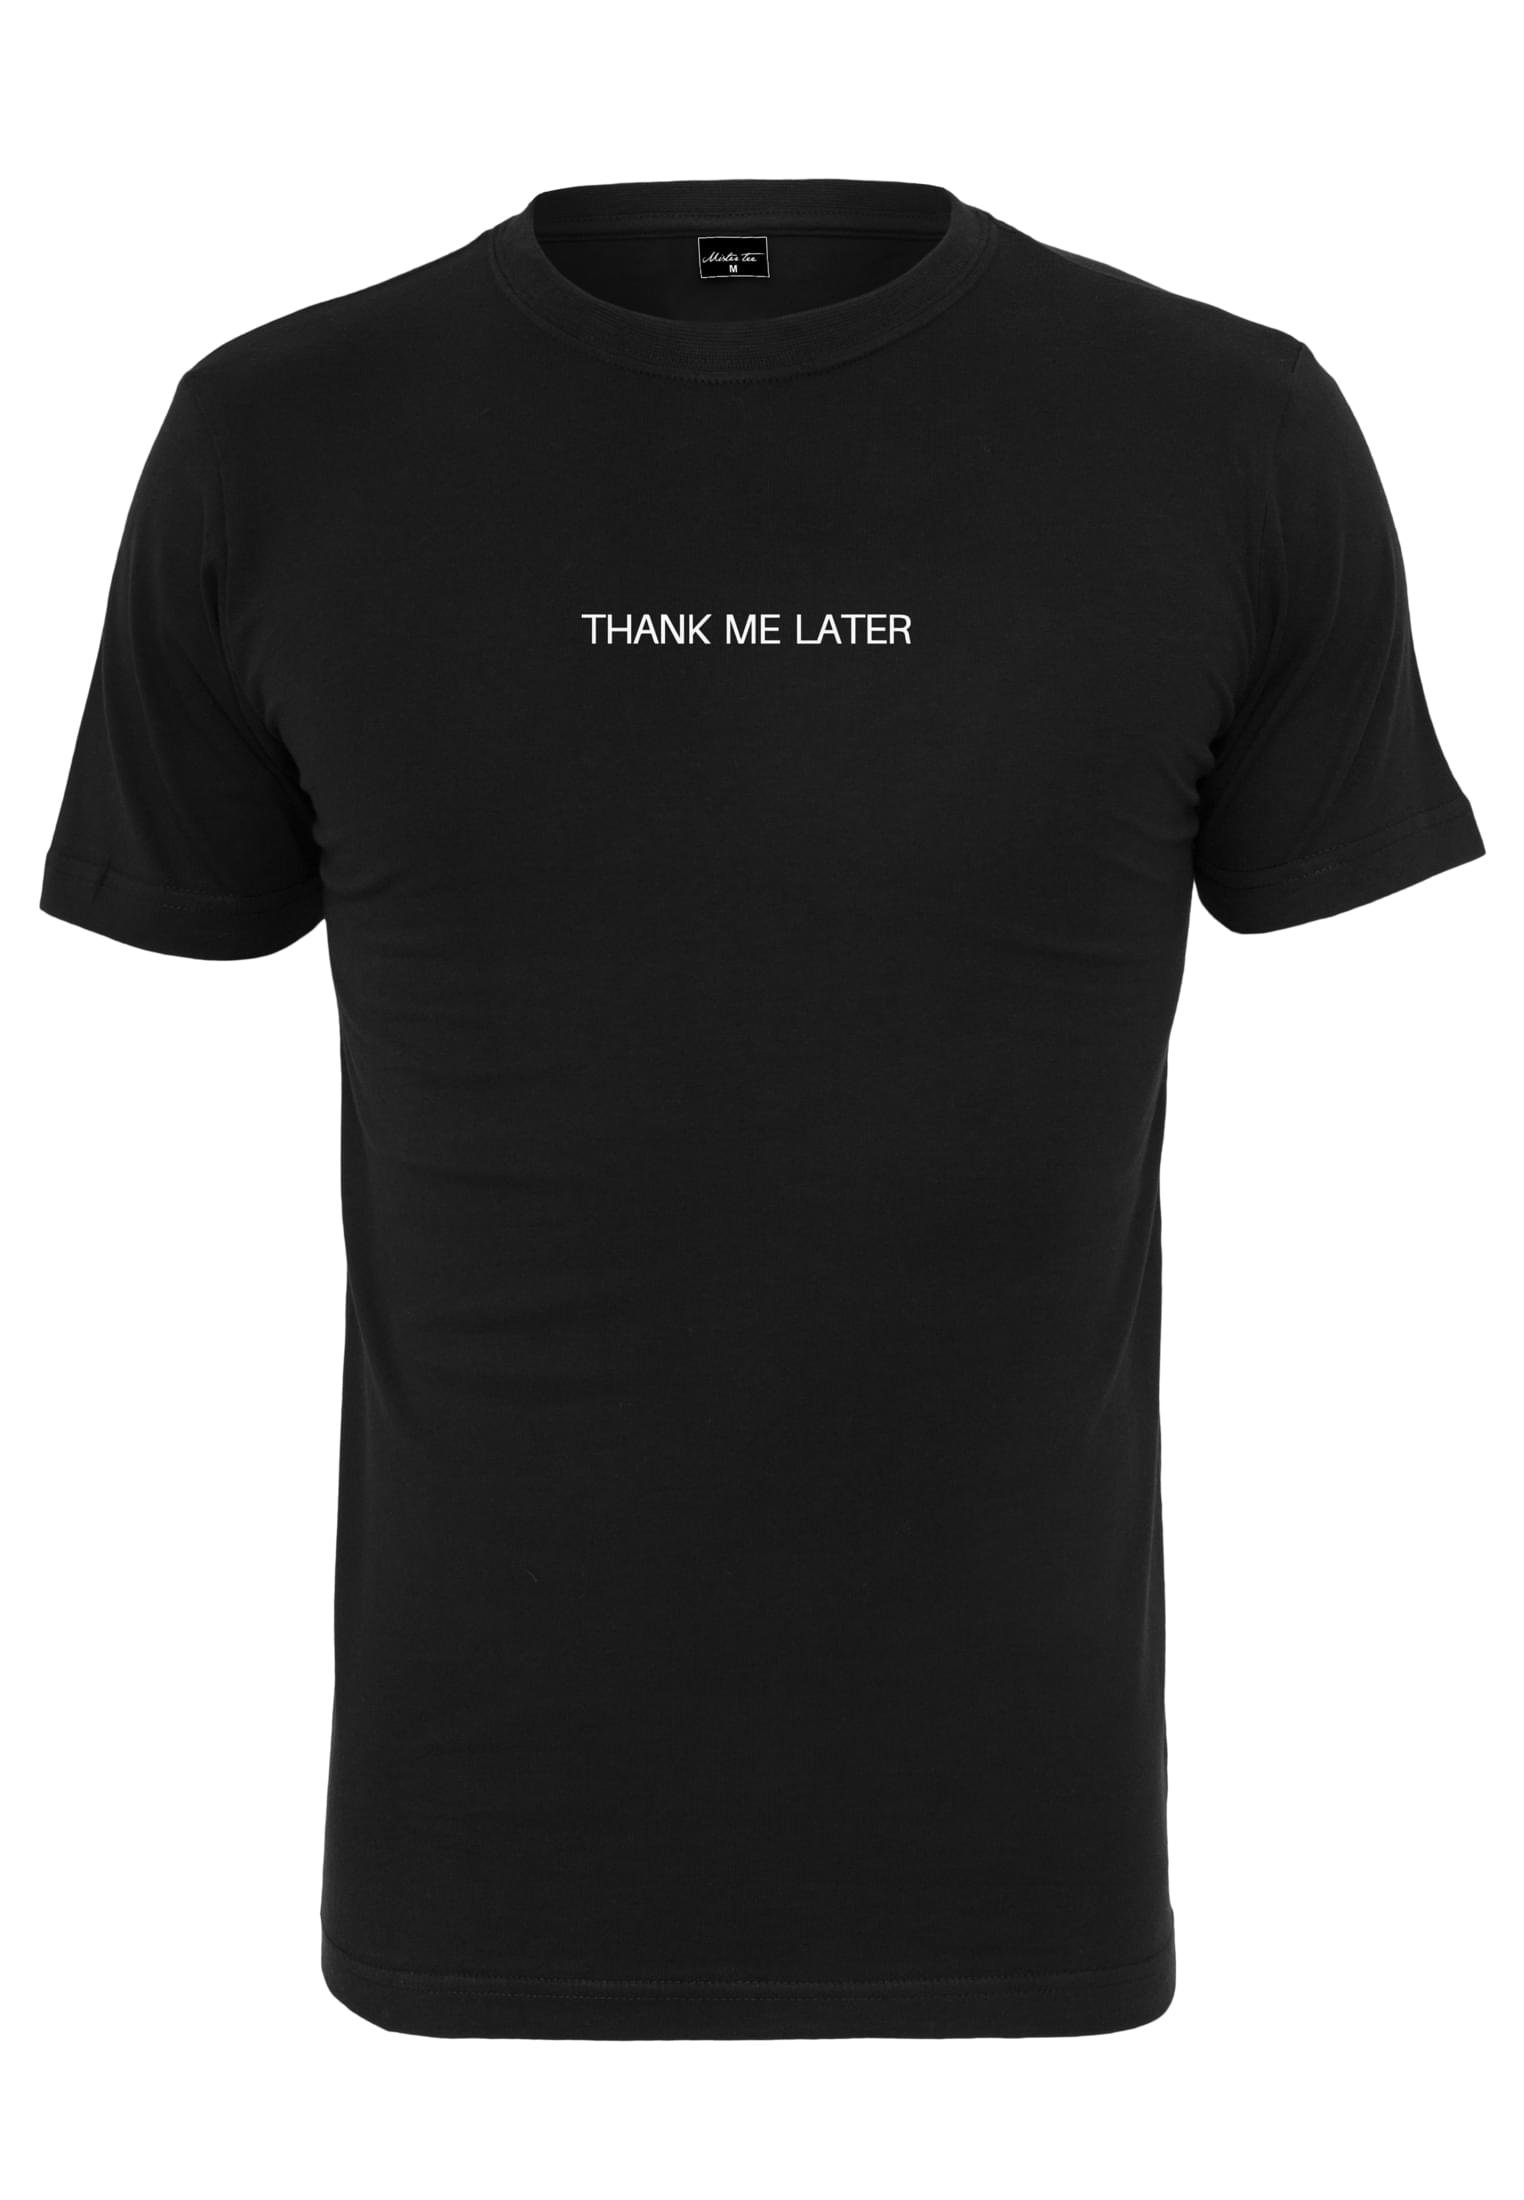 Later Tee Me black T-Shirt Thank MisterTee Herren (1-tlg)